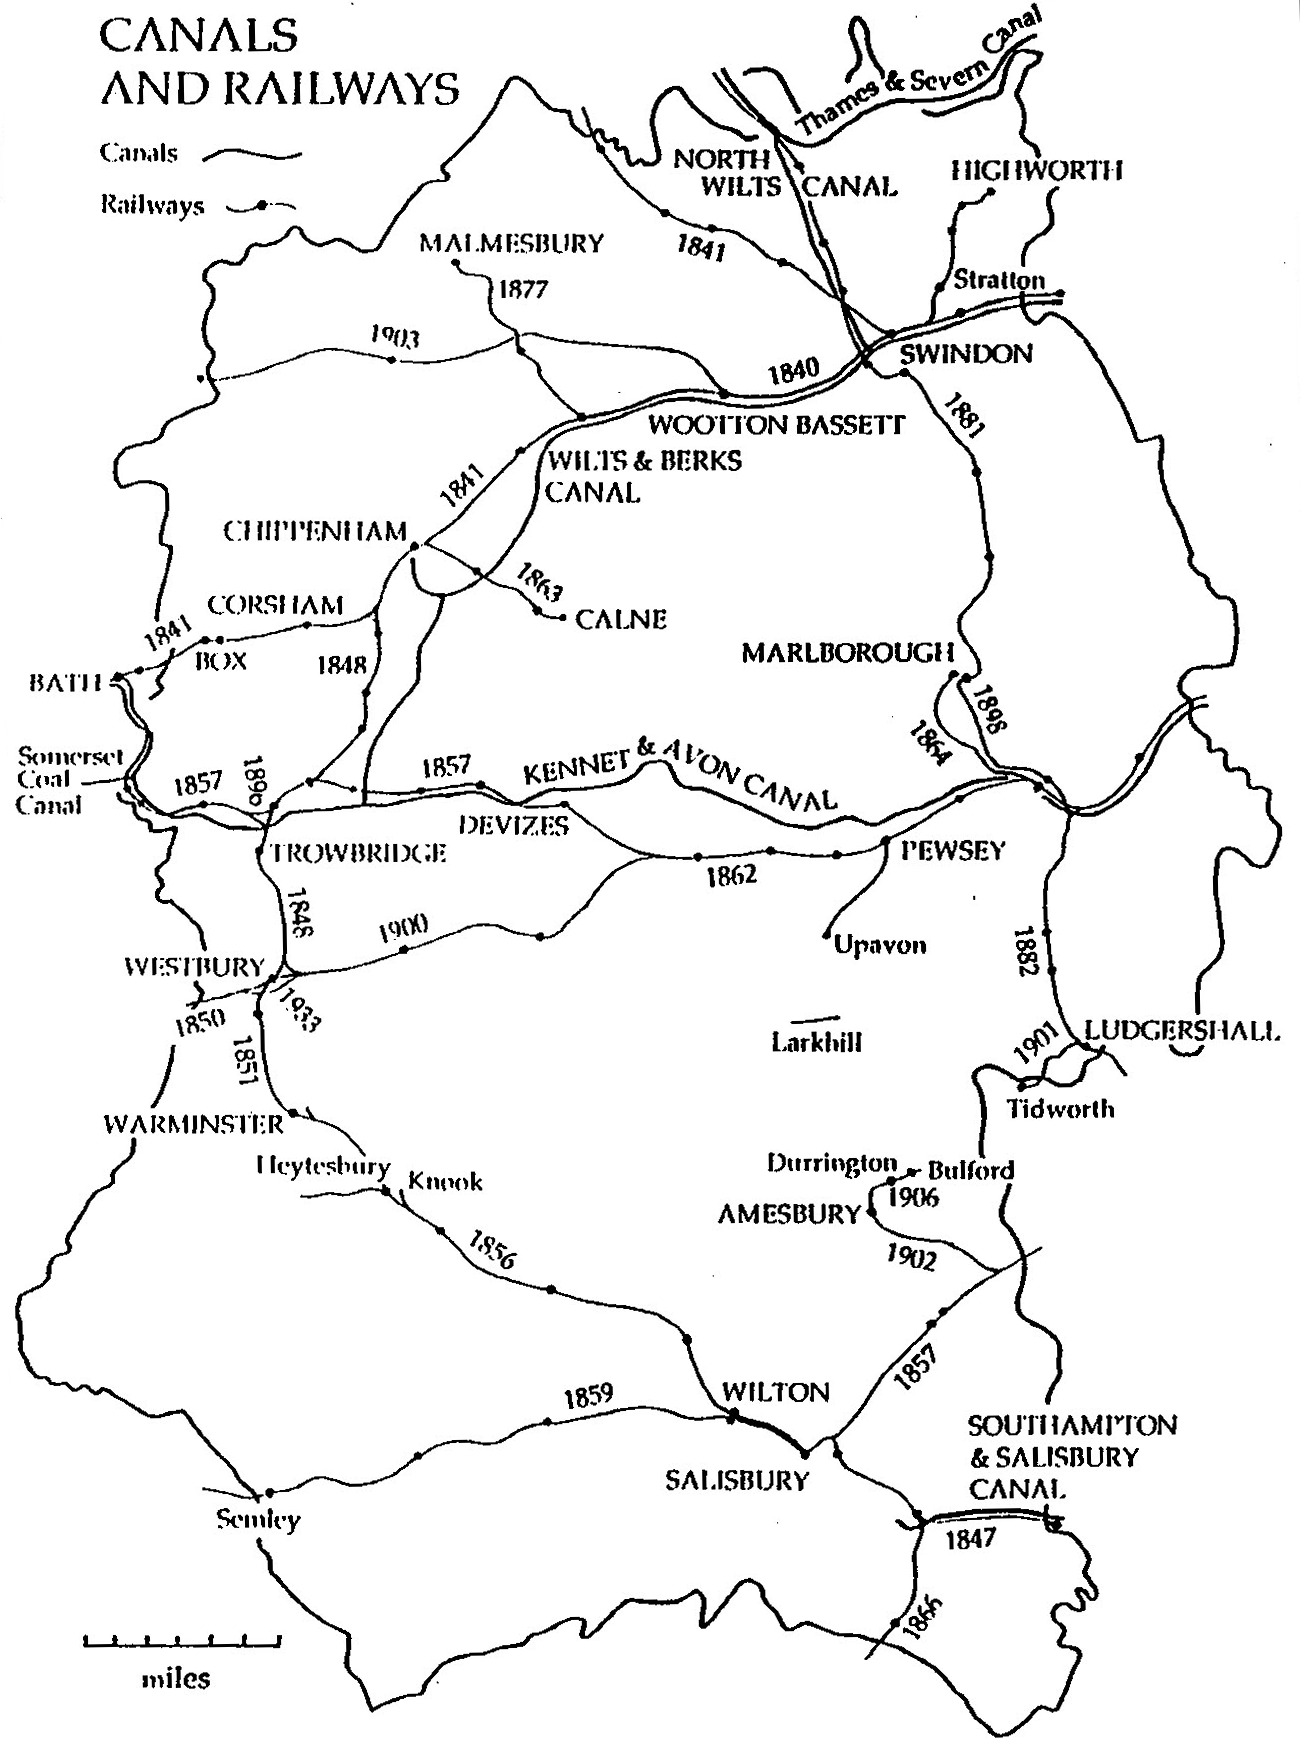 Canals & Railways